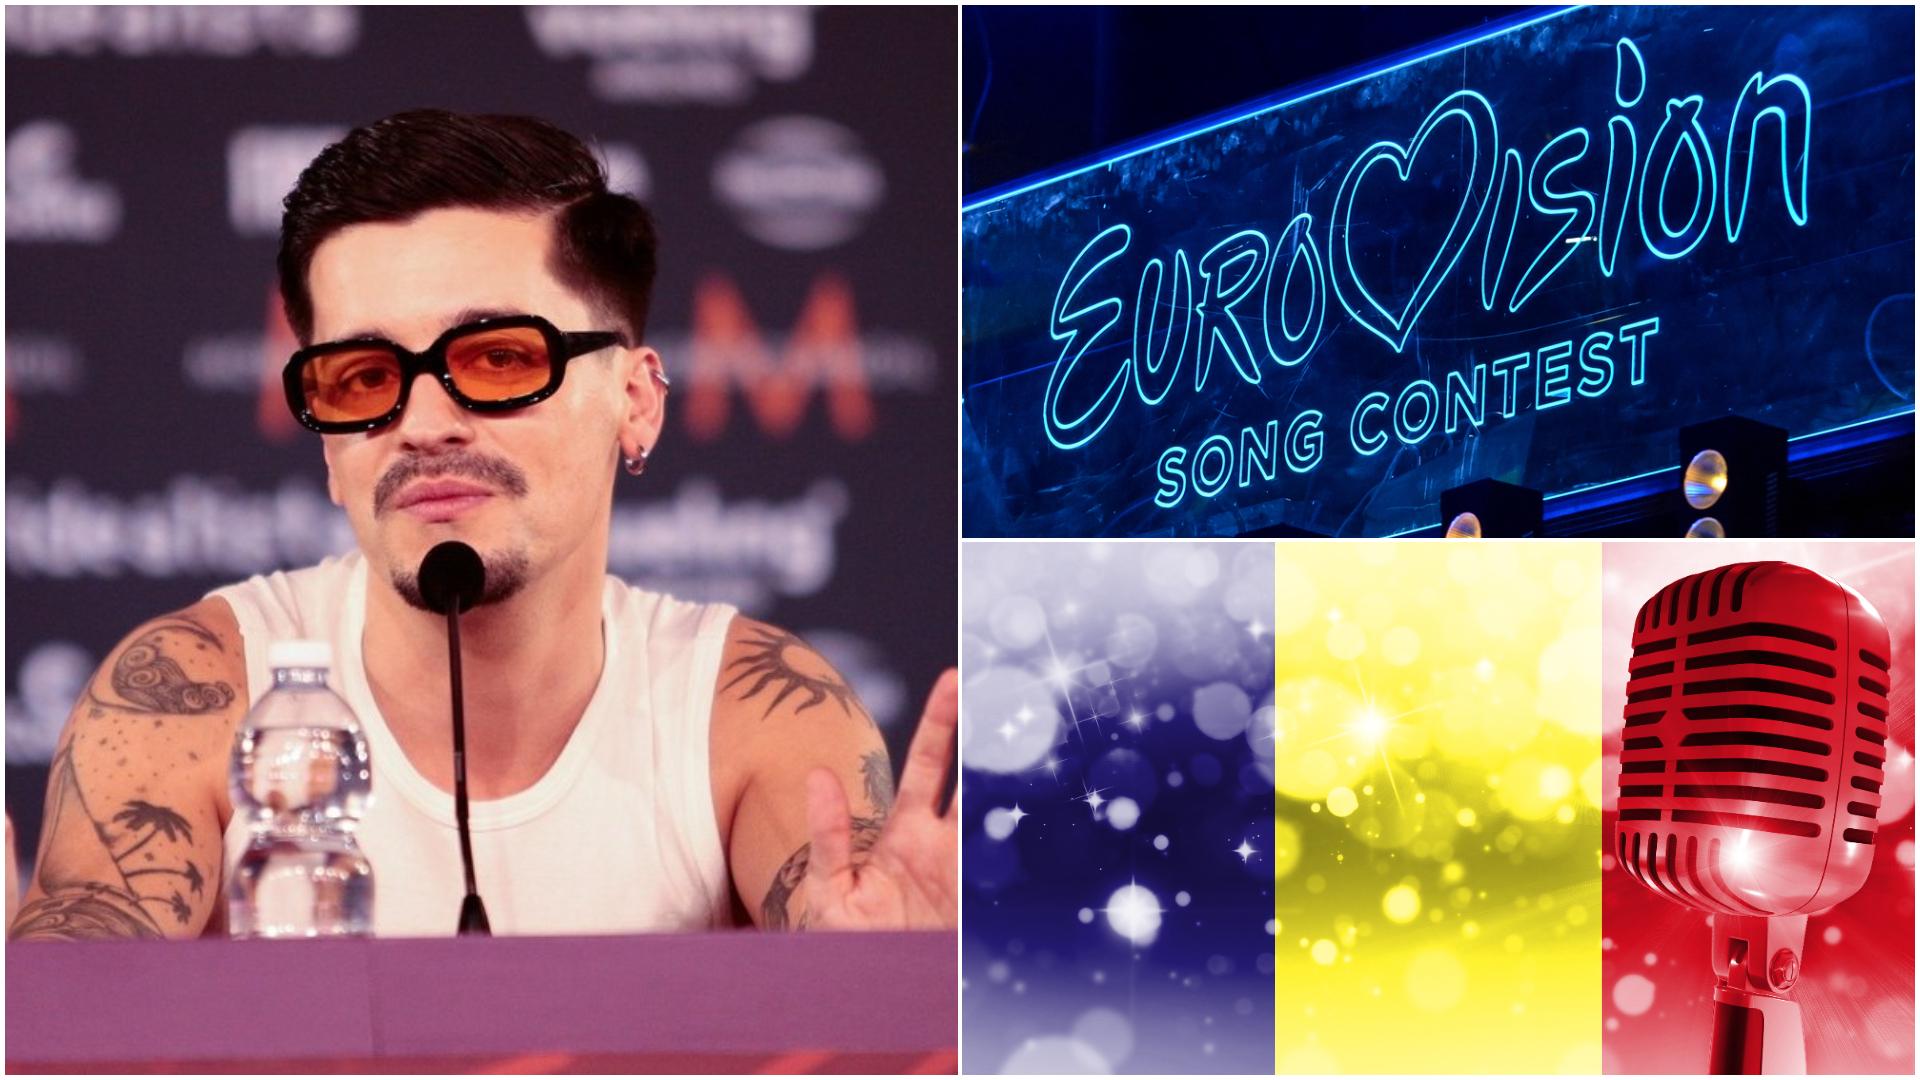 Eurovision 2022. De la ce oră și unde poate fi văzut WRS, reprezentantul României, în cea de-a doua semifinală a competiției